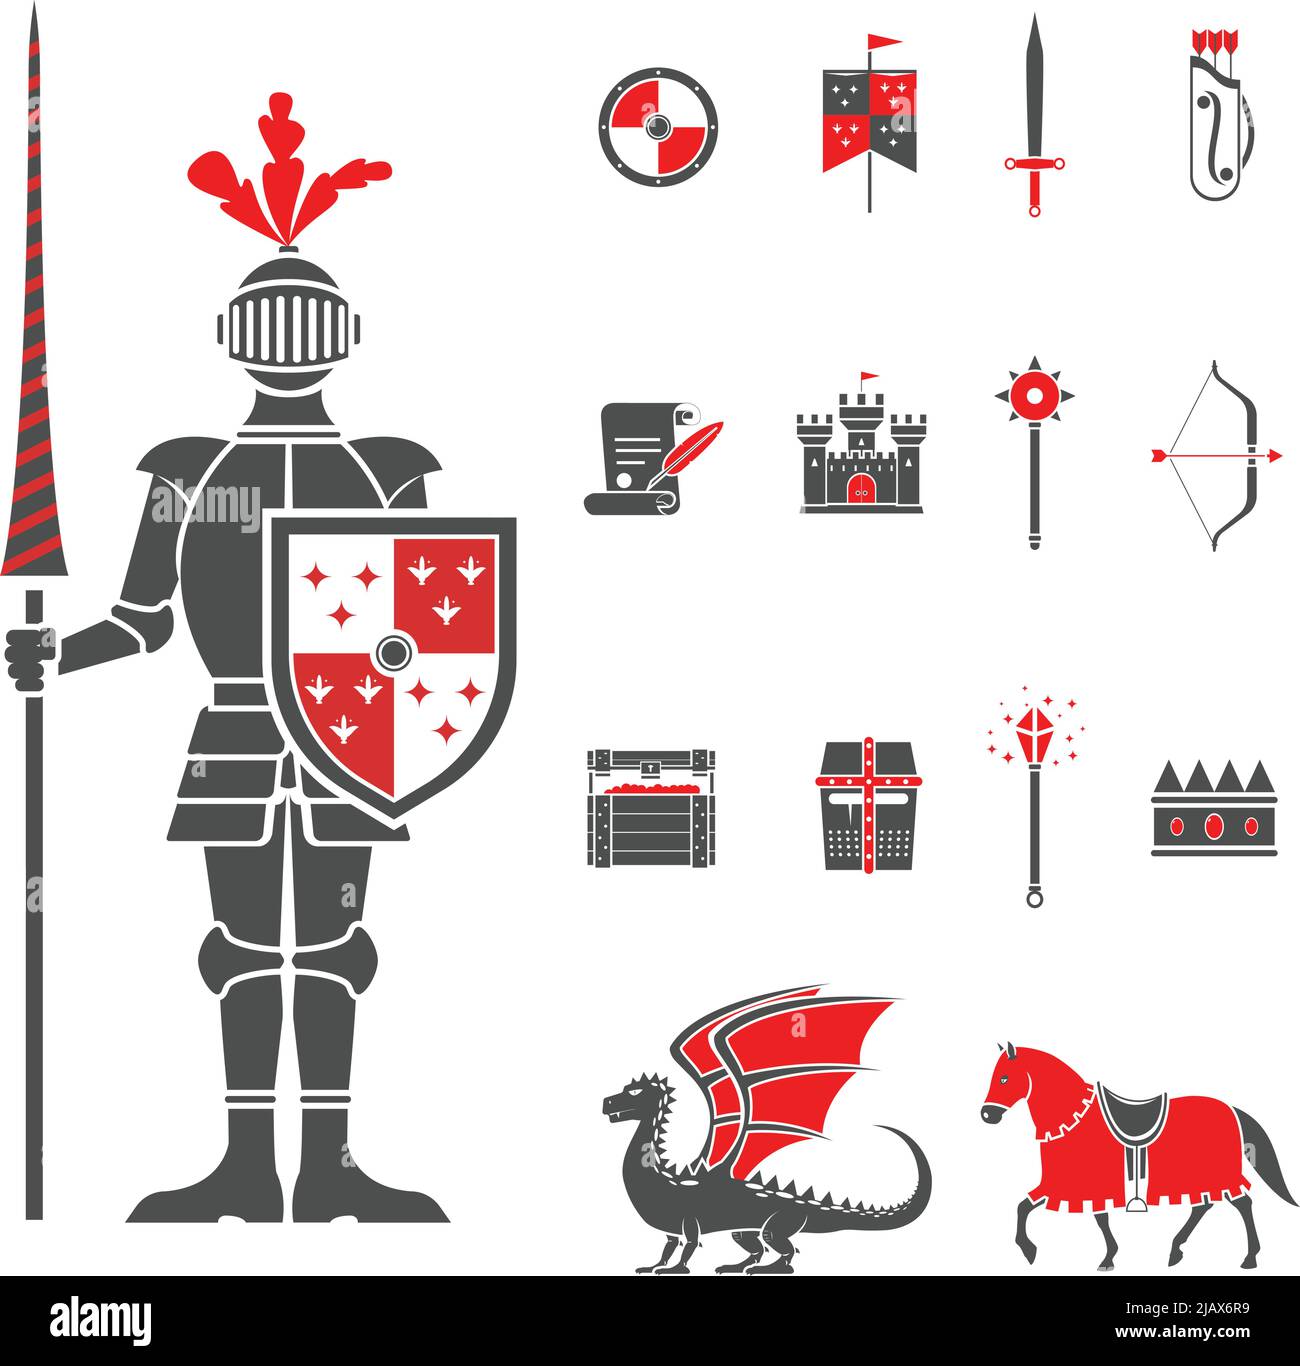 Mittelalterlicher Burgritter mit Lanze und Schild-Ikonen und Drachen rot schwarz abstrakt isoliert Vektor-Illustration Stock Vektor